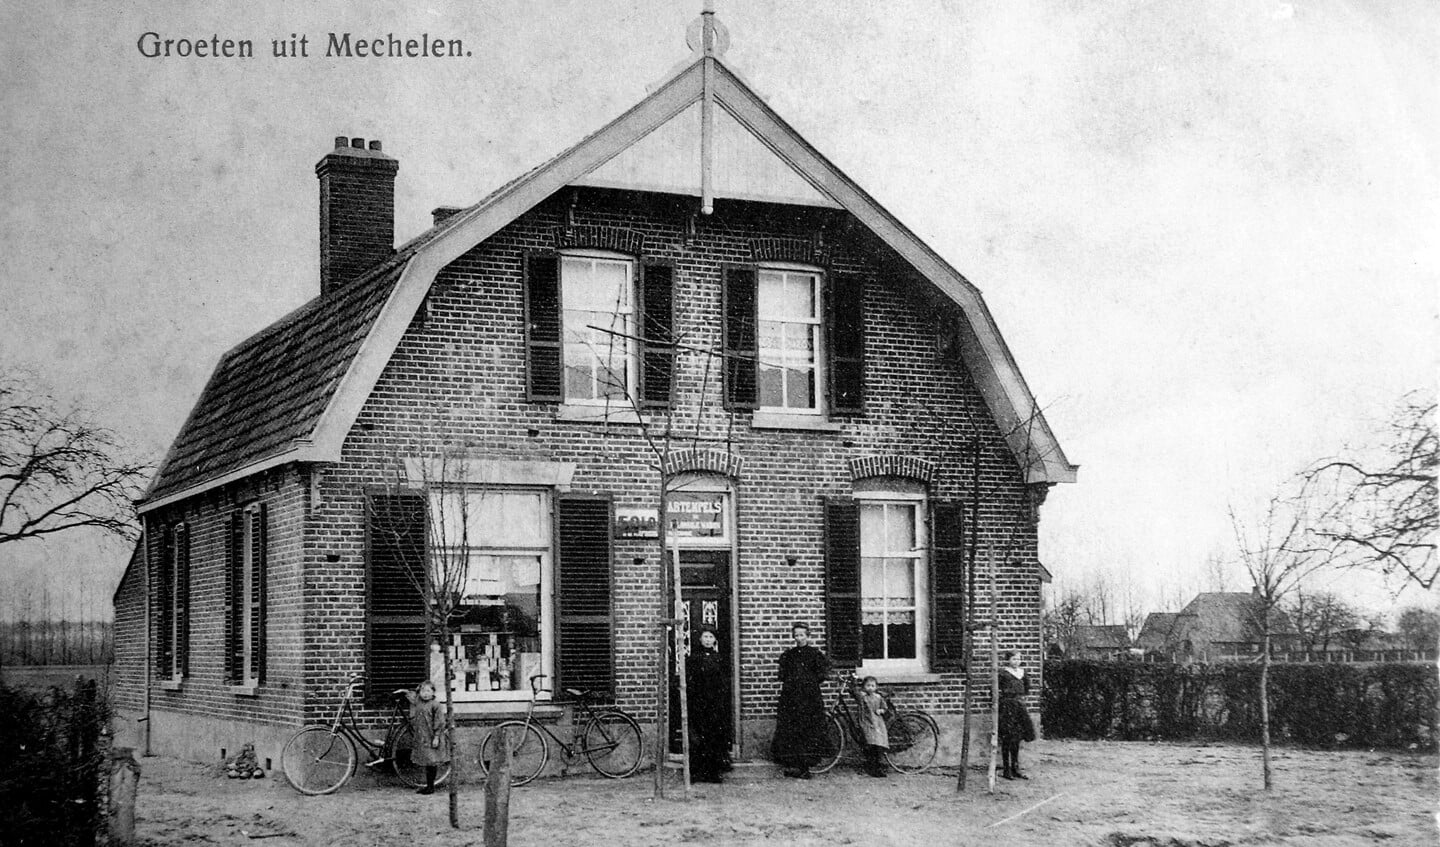 De verdwenen kruidenierswinkel van Tempels aan de Zwanenburgseweg in Megchelen zonder G. Foto: OVGG